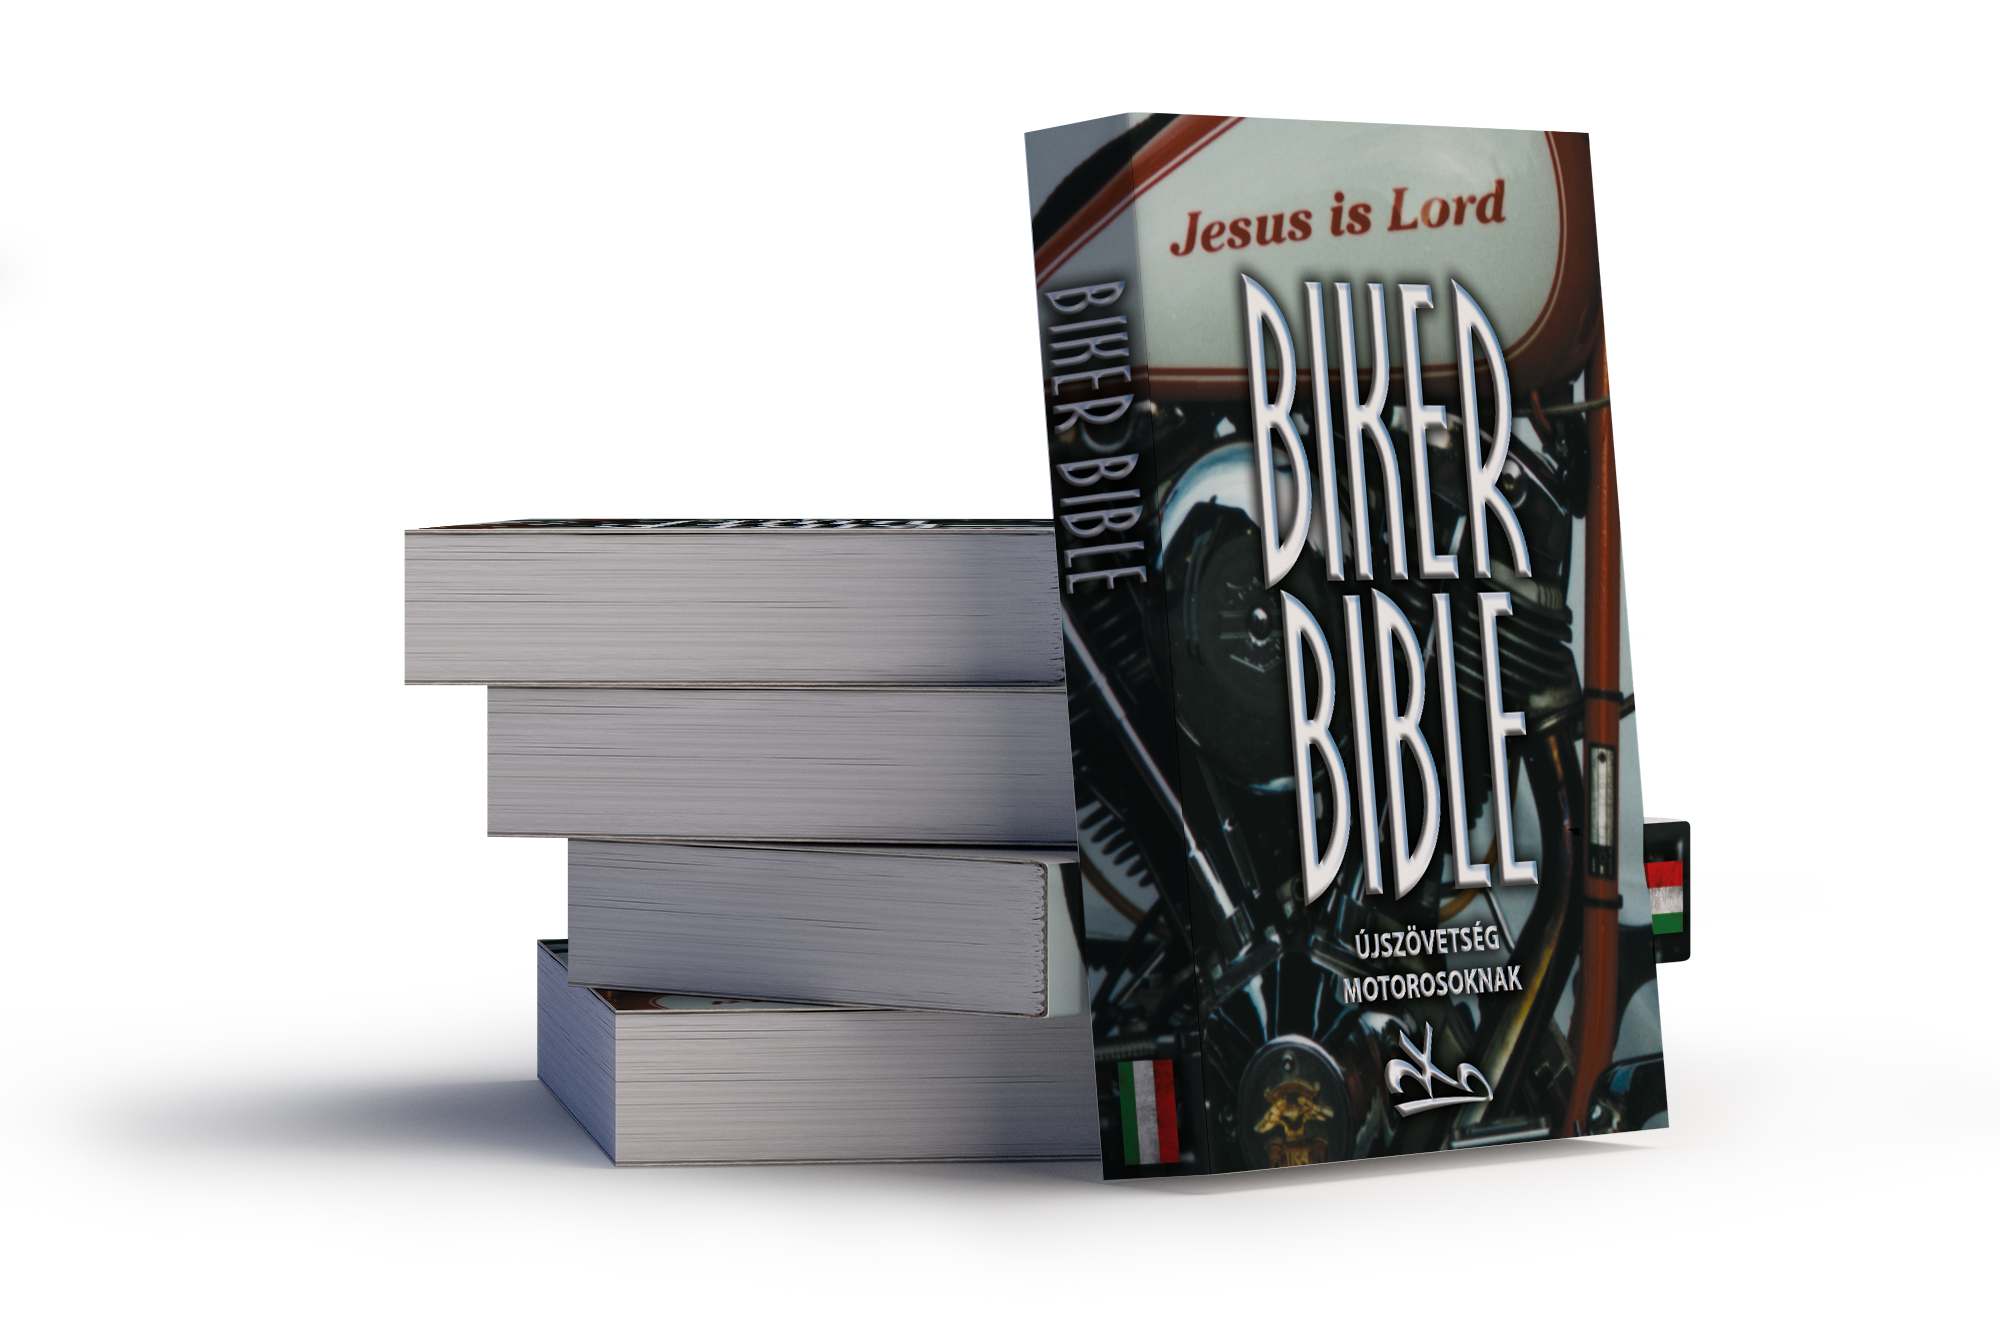 Biker Bibel - Ungarisch